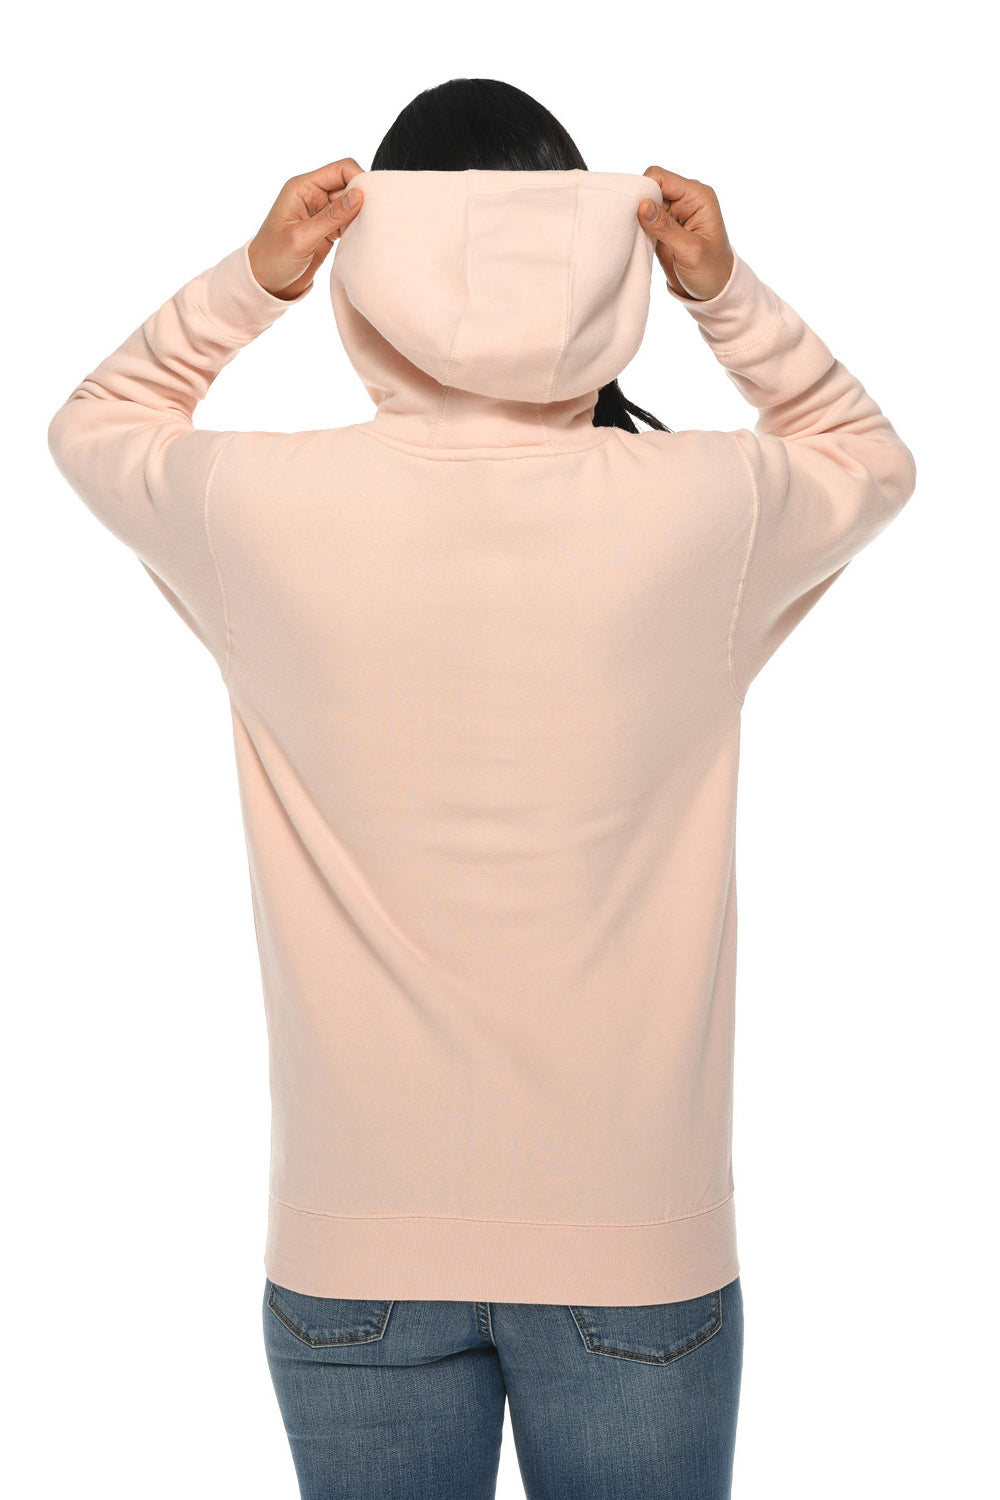 Lane Seven LS14001 Mens Premium Hooded Sweatshirt Hoodie Pale Pink Back